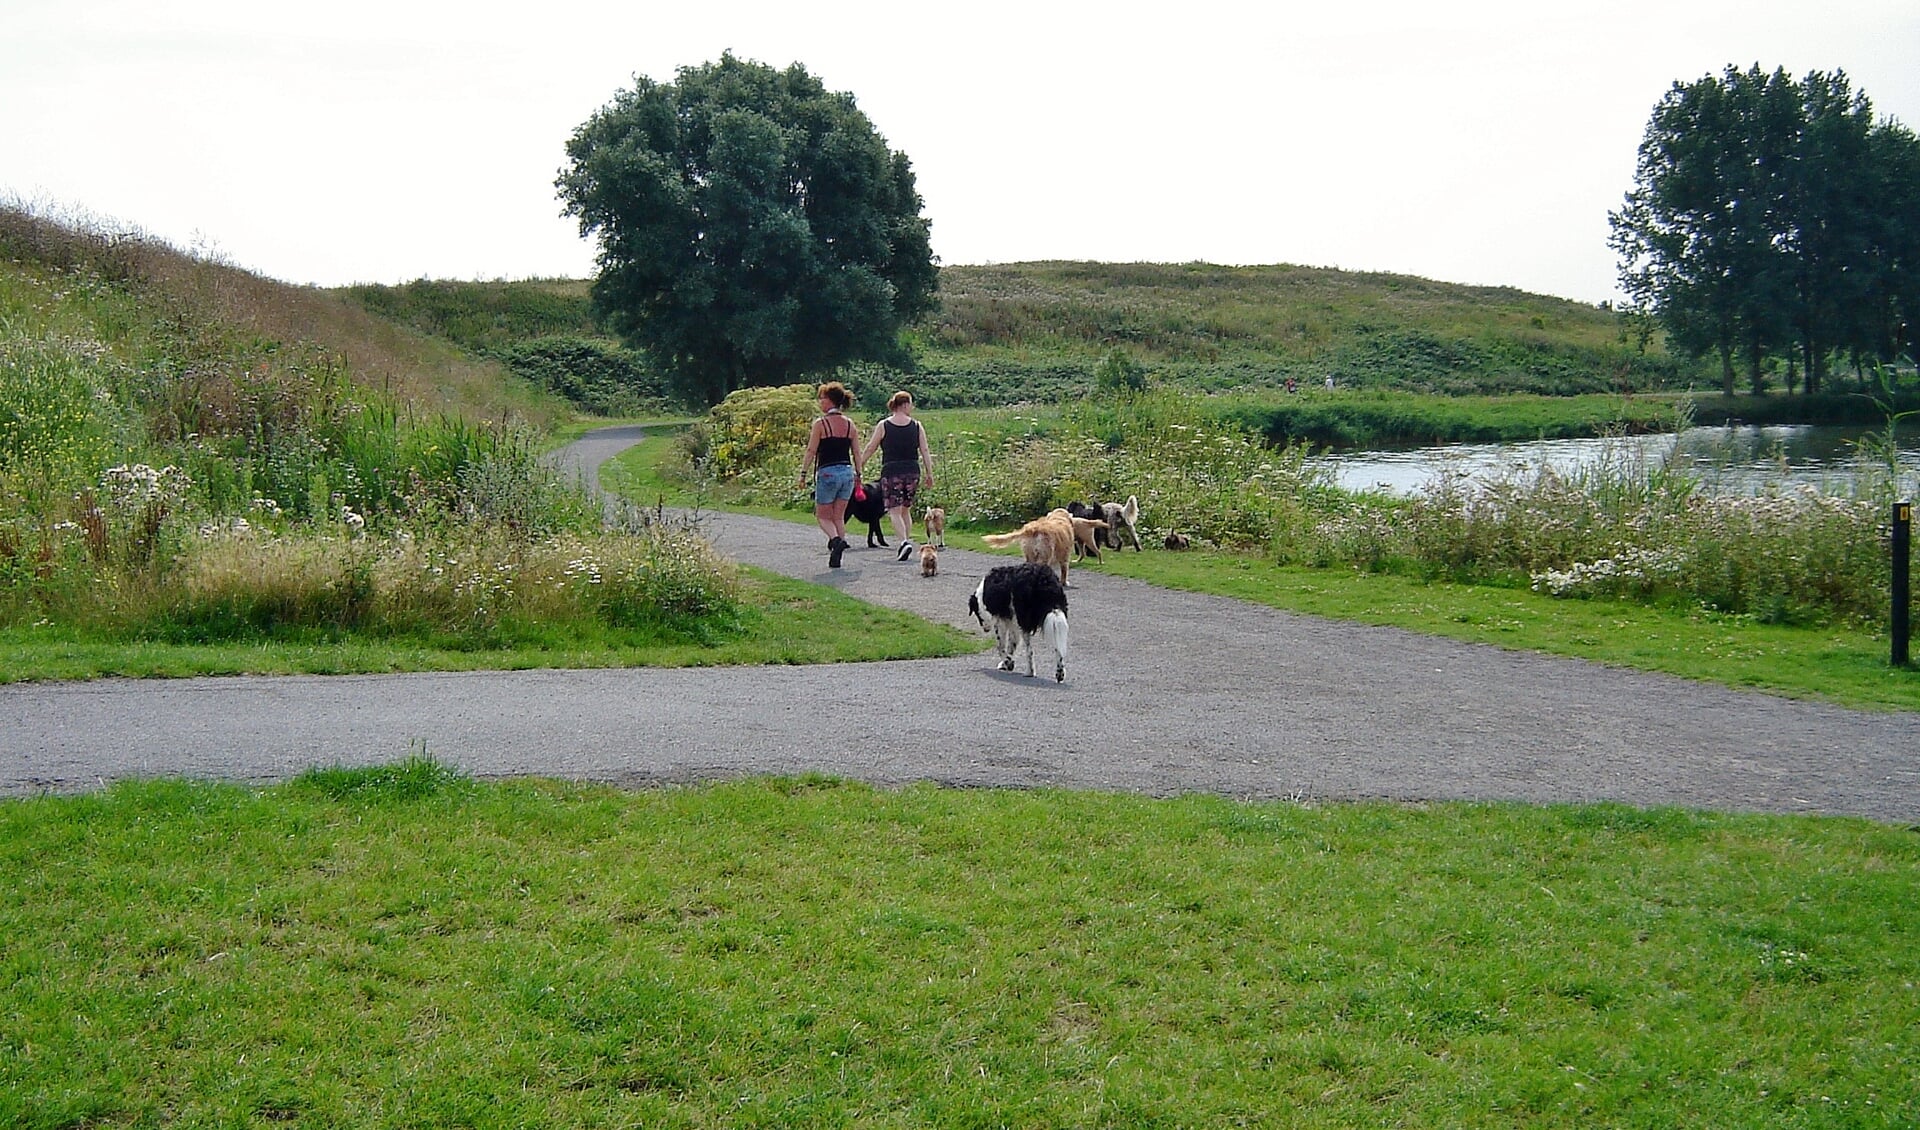 De gemeente Oegstgeest gaat in het grootste deel van het gebied rond de Klinkenbergerplas een permanente aanlijnplicht invoeren. De hondenvrienden verzetten zich hiertegen. | Foto Willemien Timmers